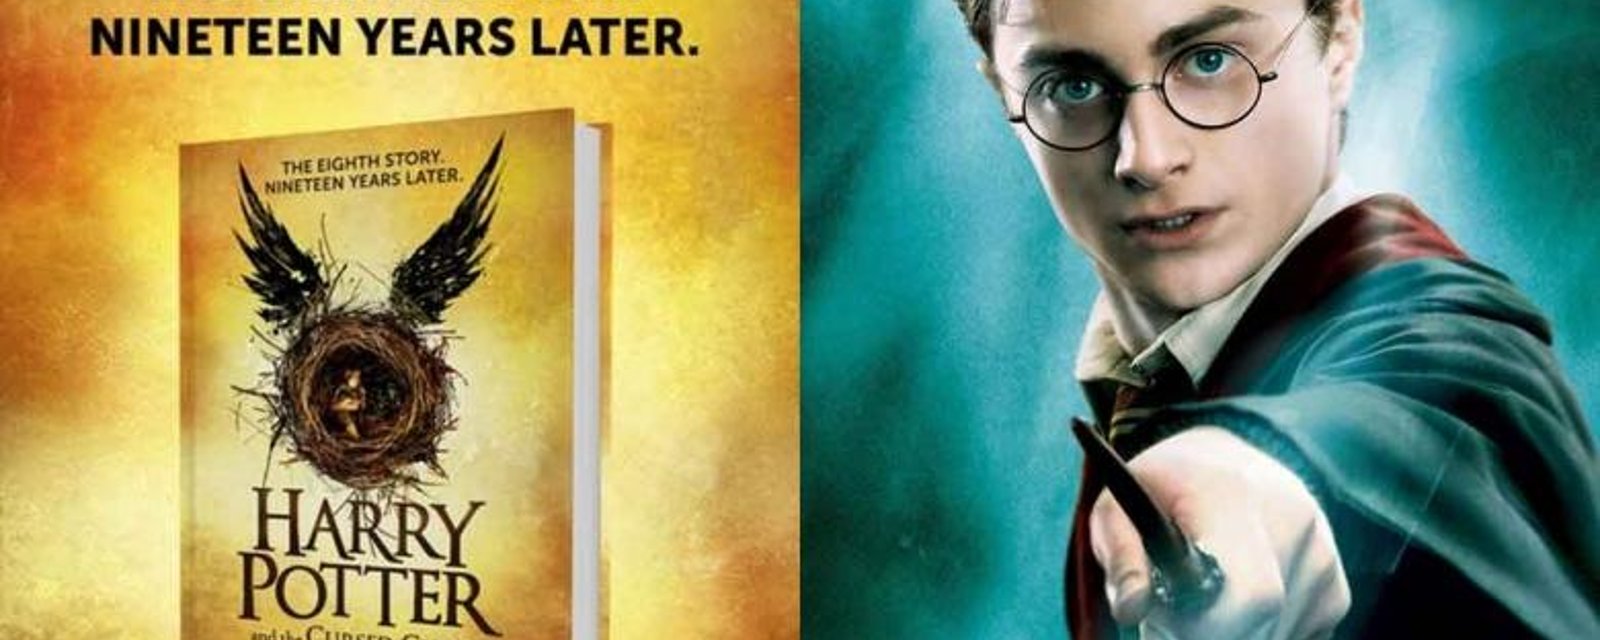 On connait maintenant la date de sortie du nouveau livre d'Harry Potter!